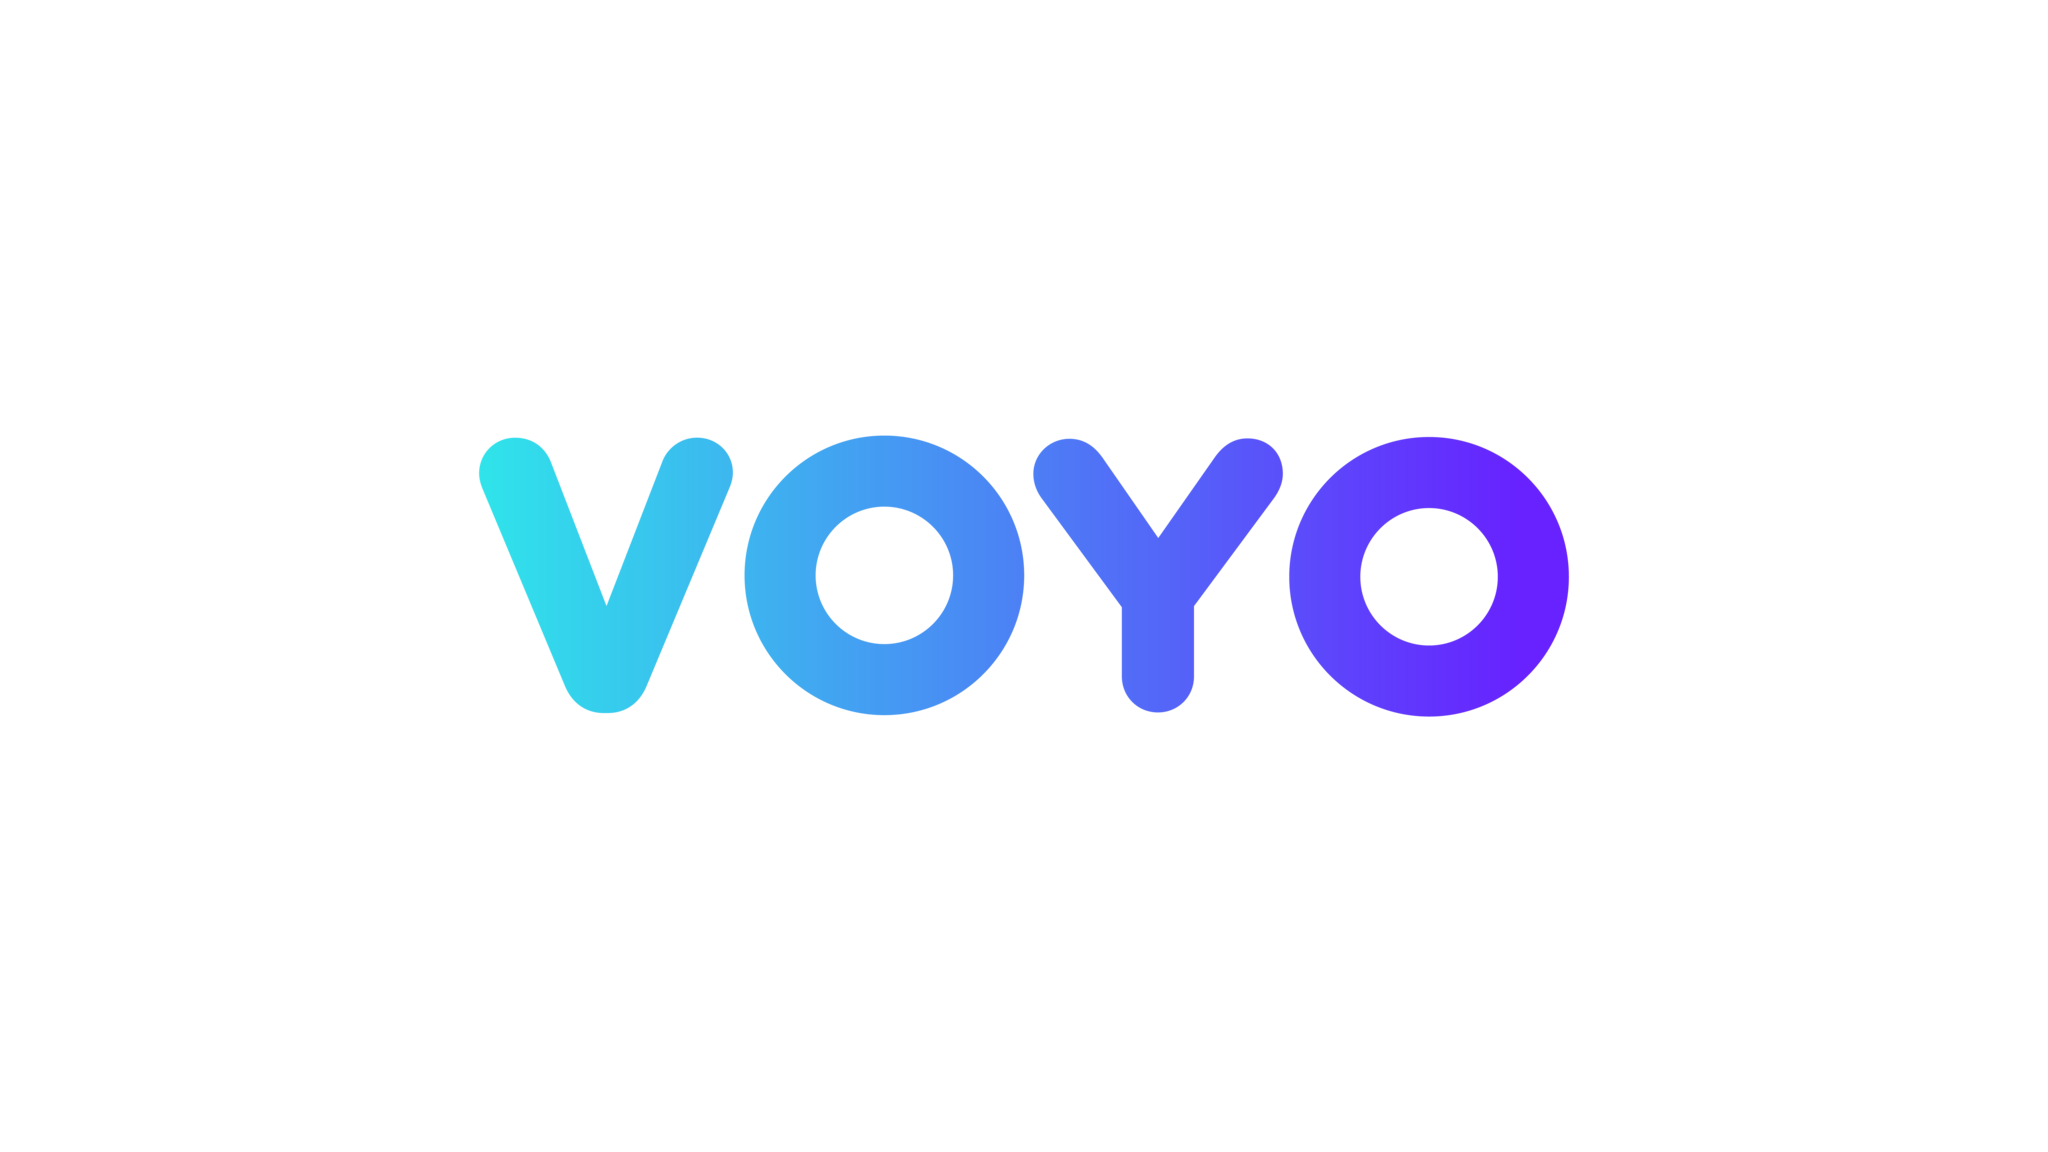 Popularita Voya stoupá. Streamovací platforma překonala půl milionu uživatelů